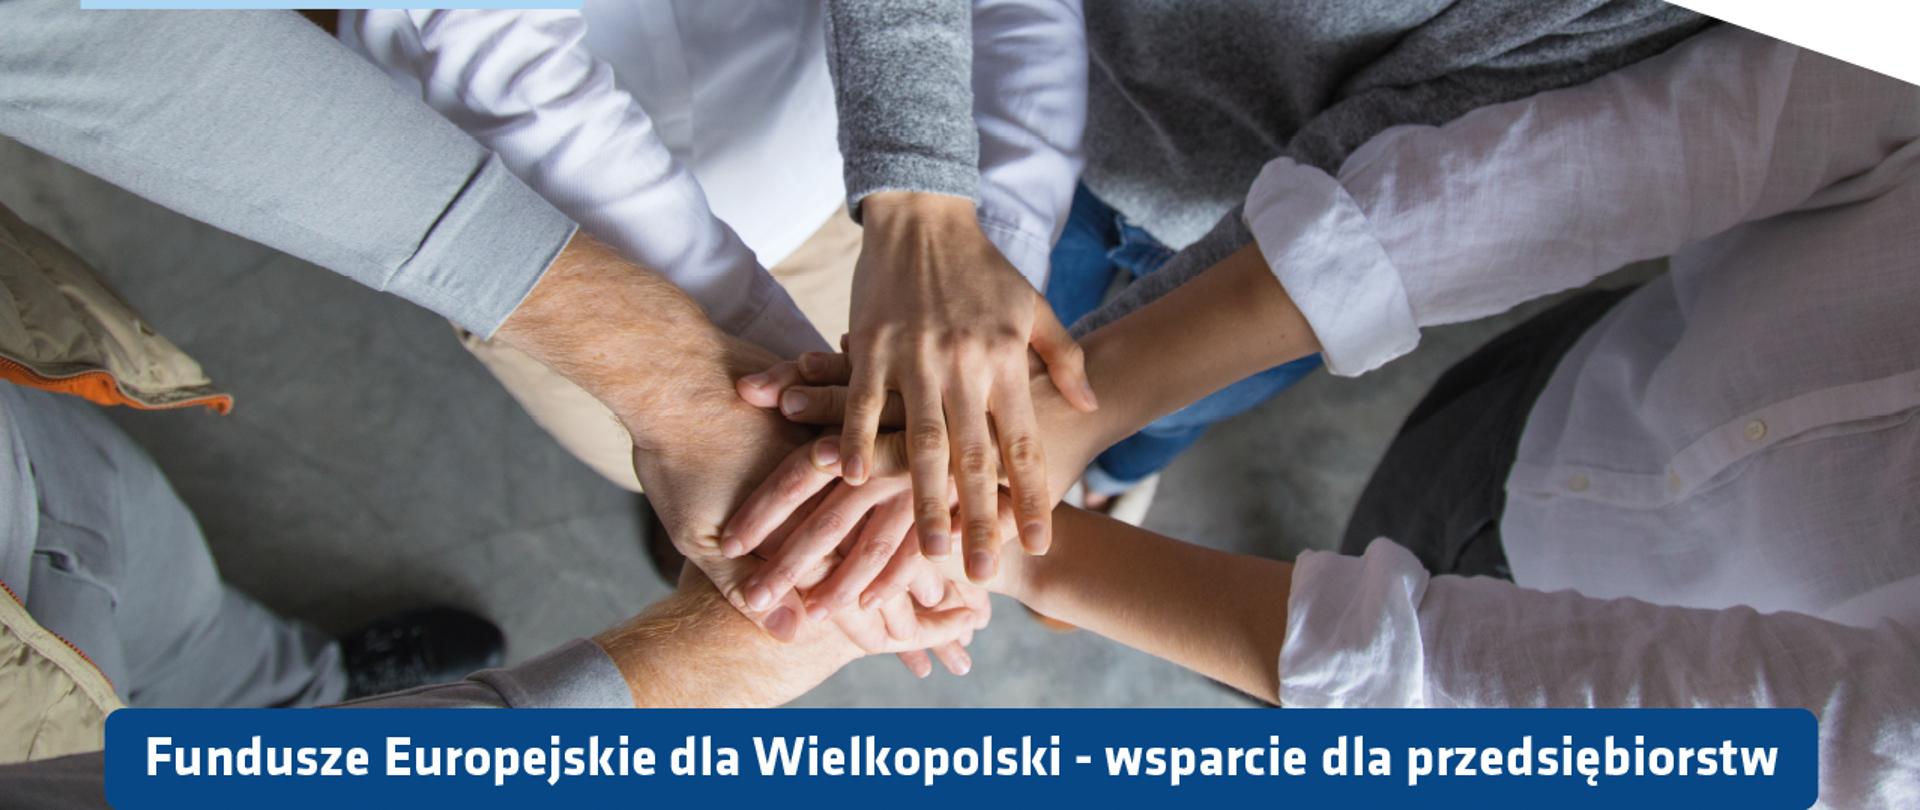 ręce wielu osób złożone jedna na drugiej, widok z góry, biały napis na niebieskim tle Fundusze Europejskie dla Wielkopolski - wsparcie dla przedsiębiorstw, logotypy: Fundusze Europejskie, WARP